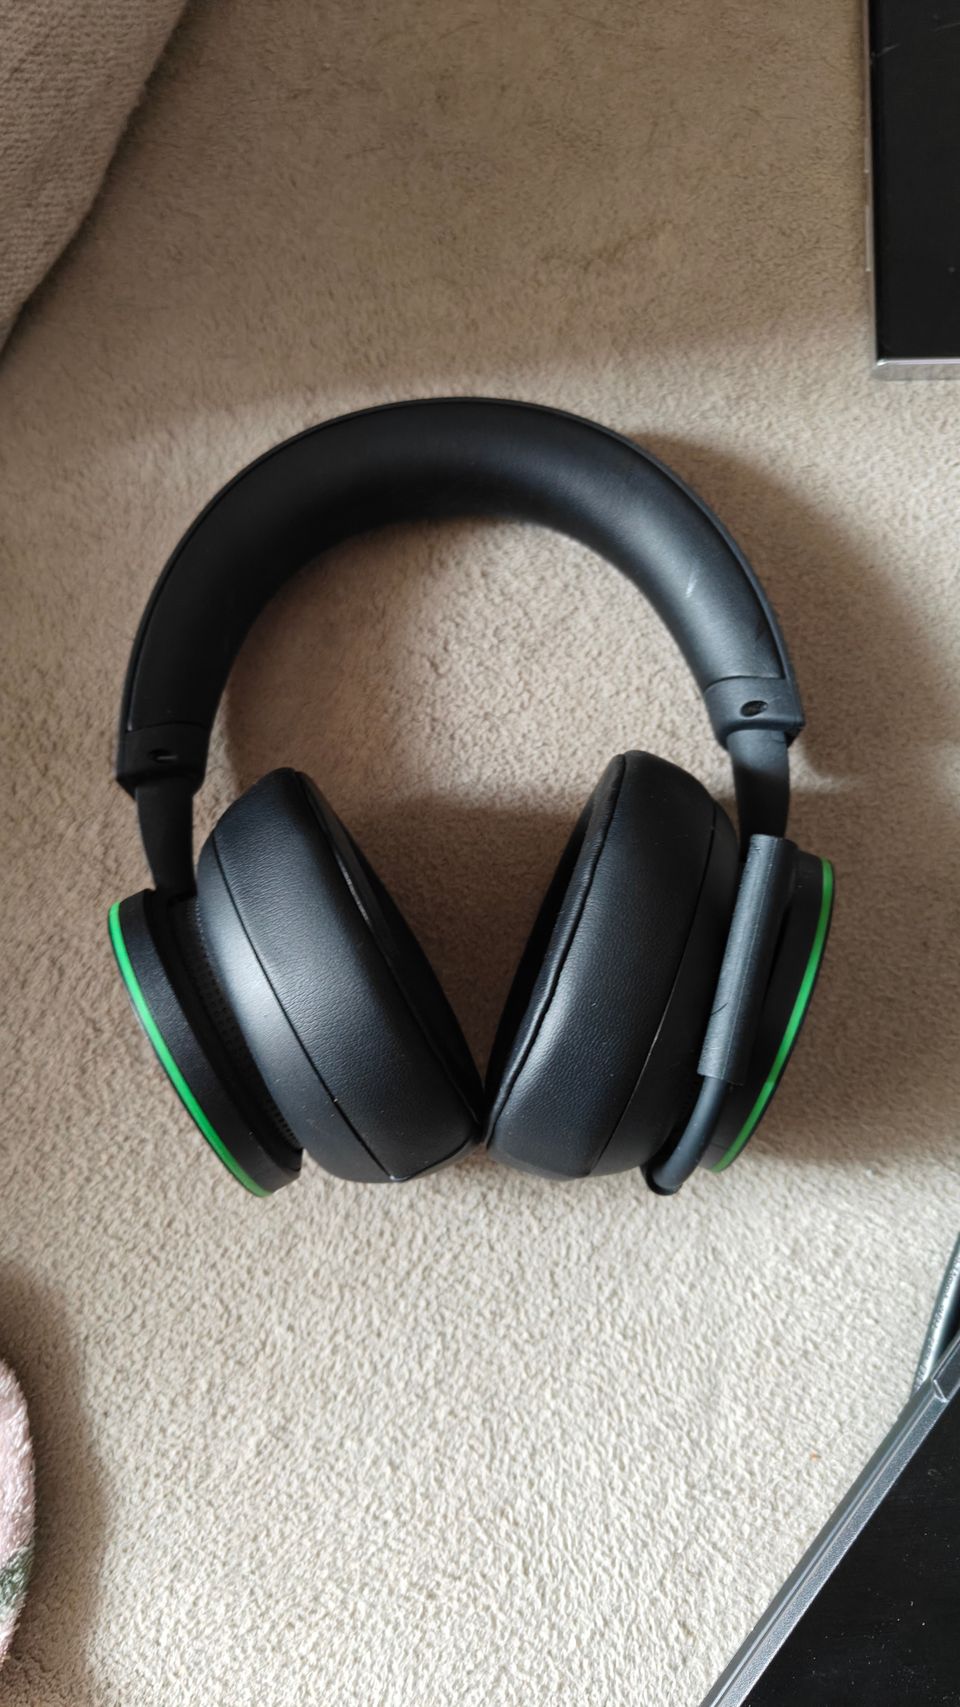 Xbox wireless headphones